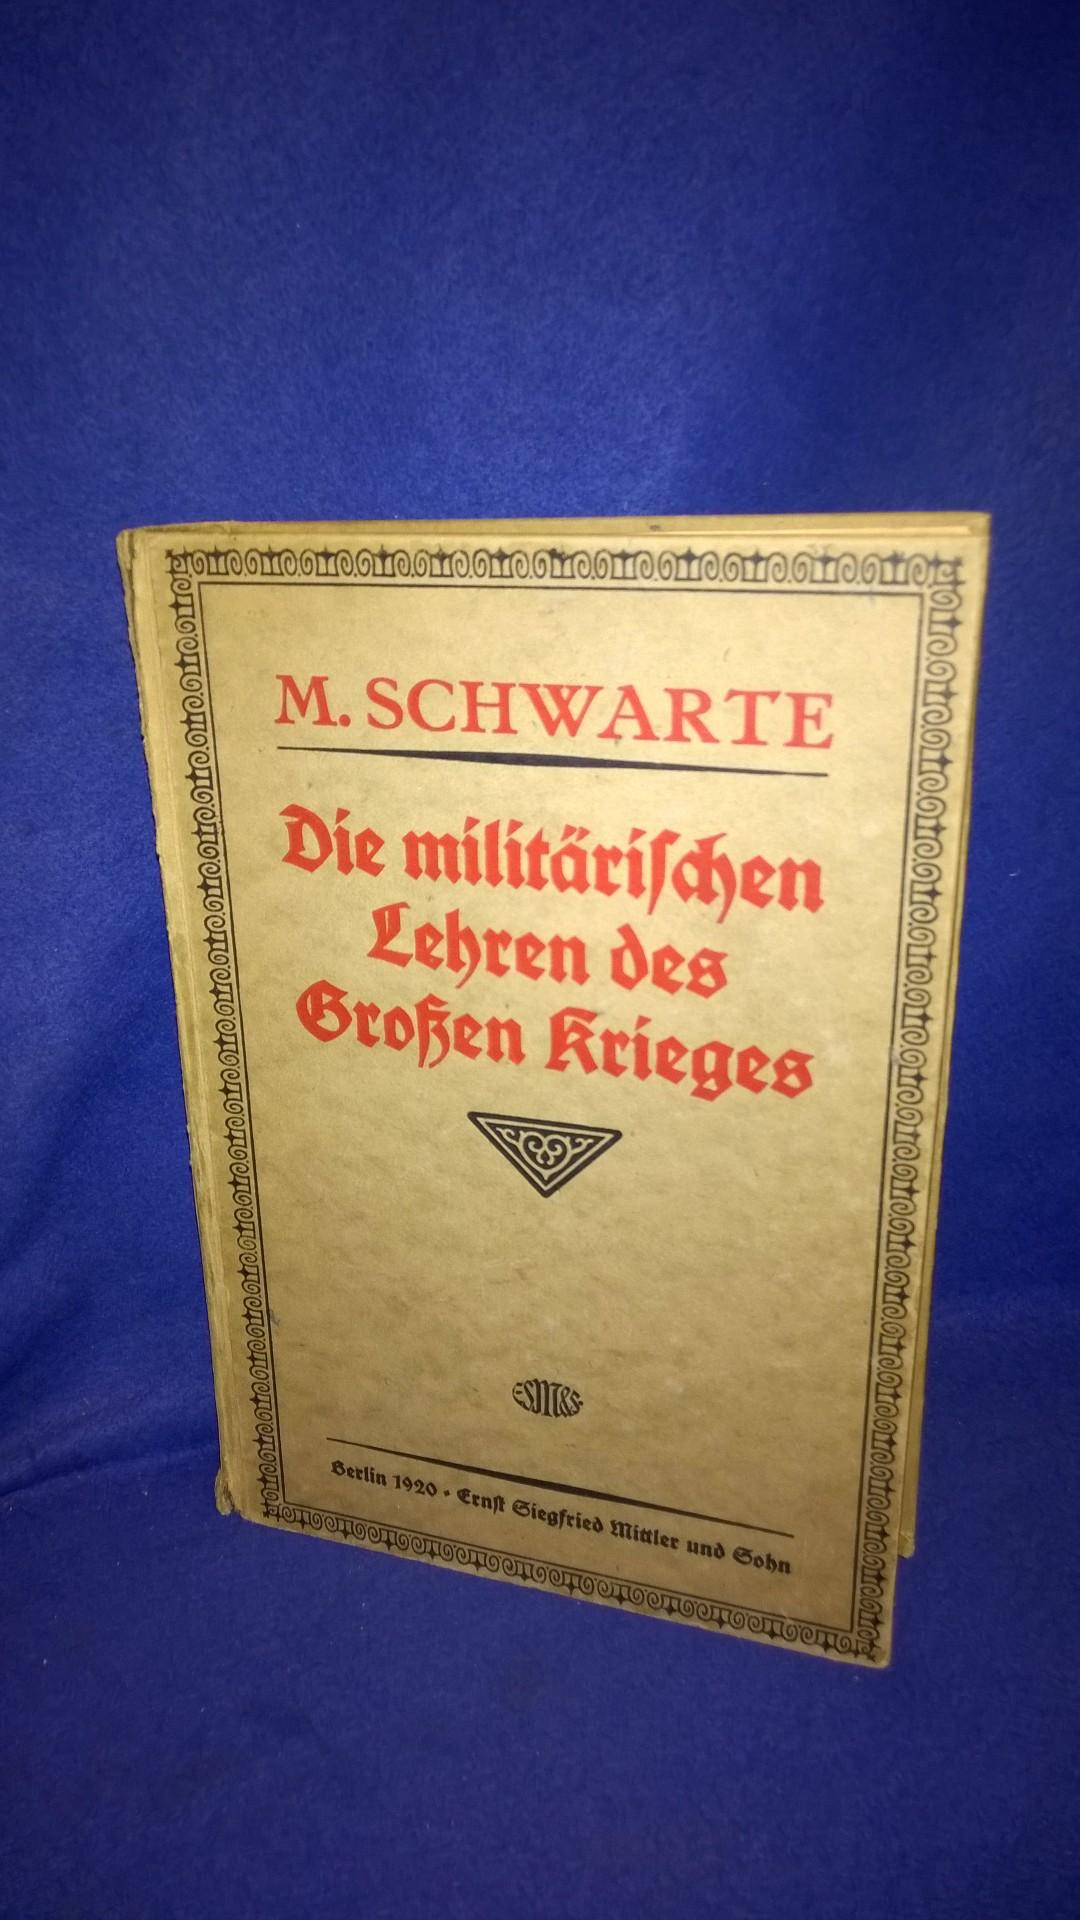 Die Militärischen Lehren des Großen Krieges. 